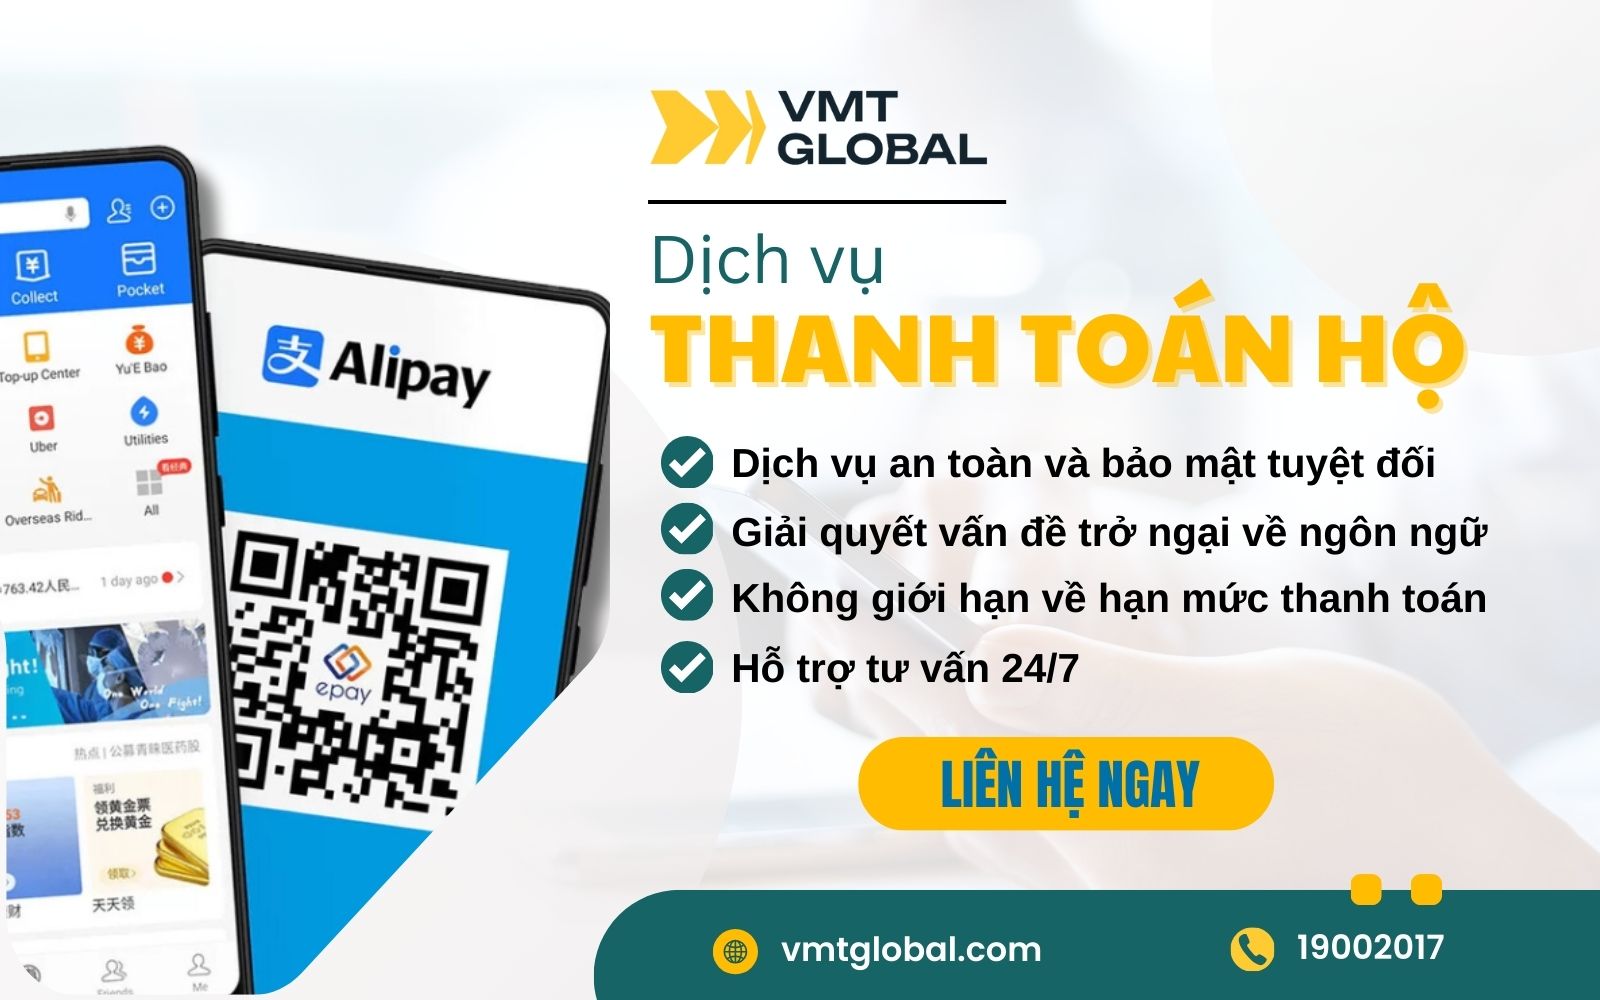 Dịch vụ thanh toán hộ Taobao, Tmall tại VMT Global